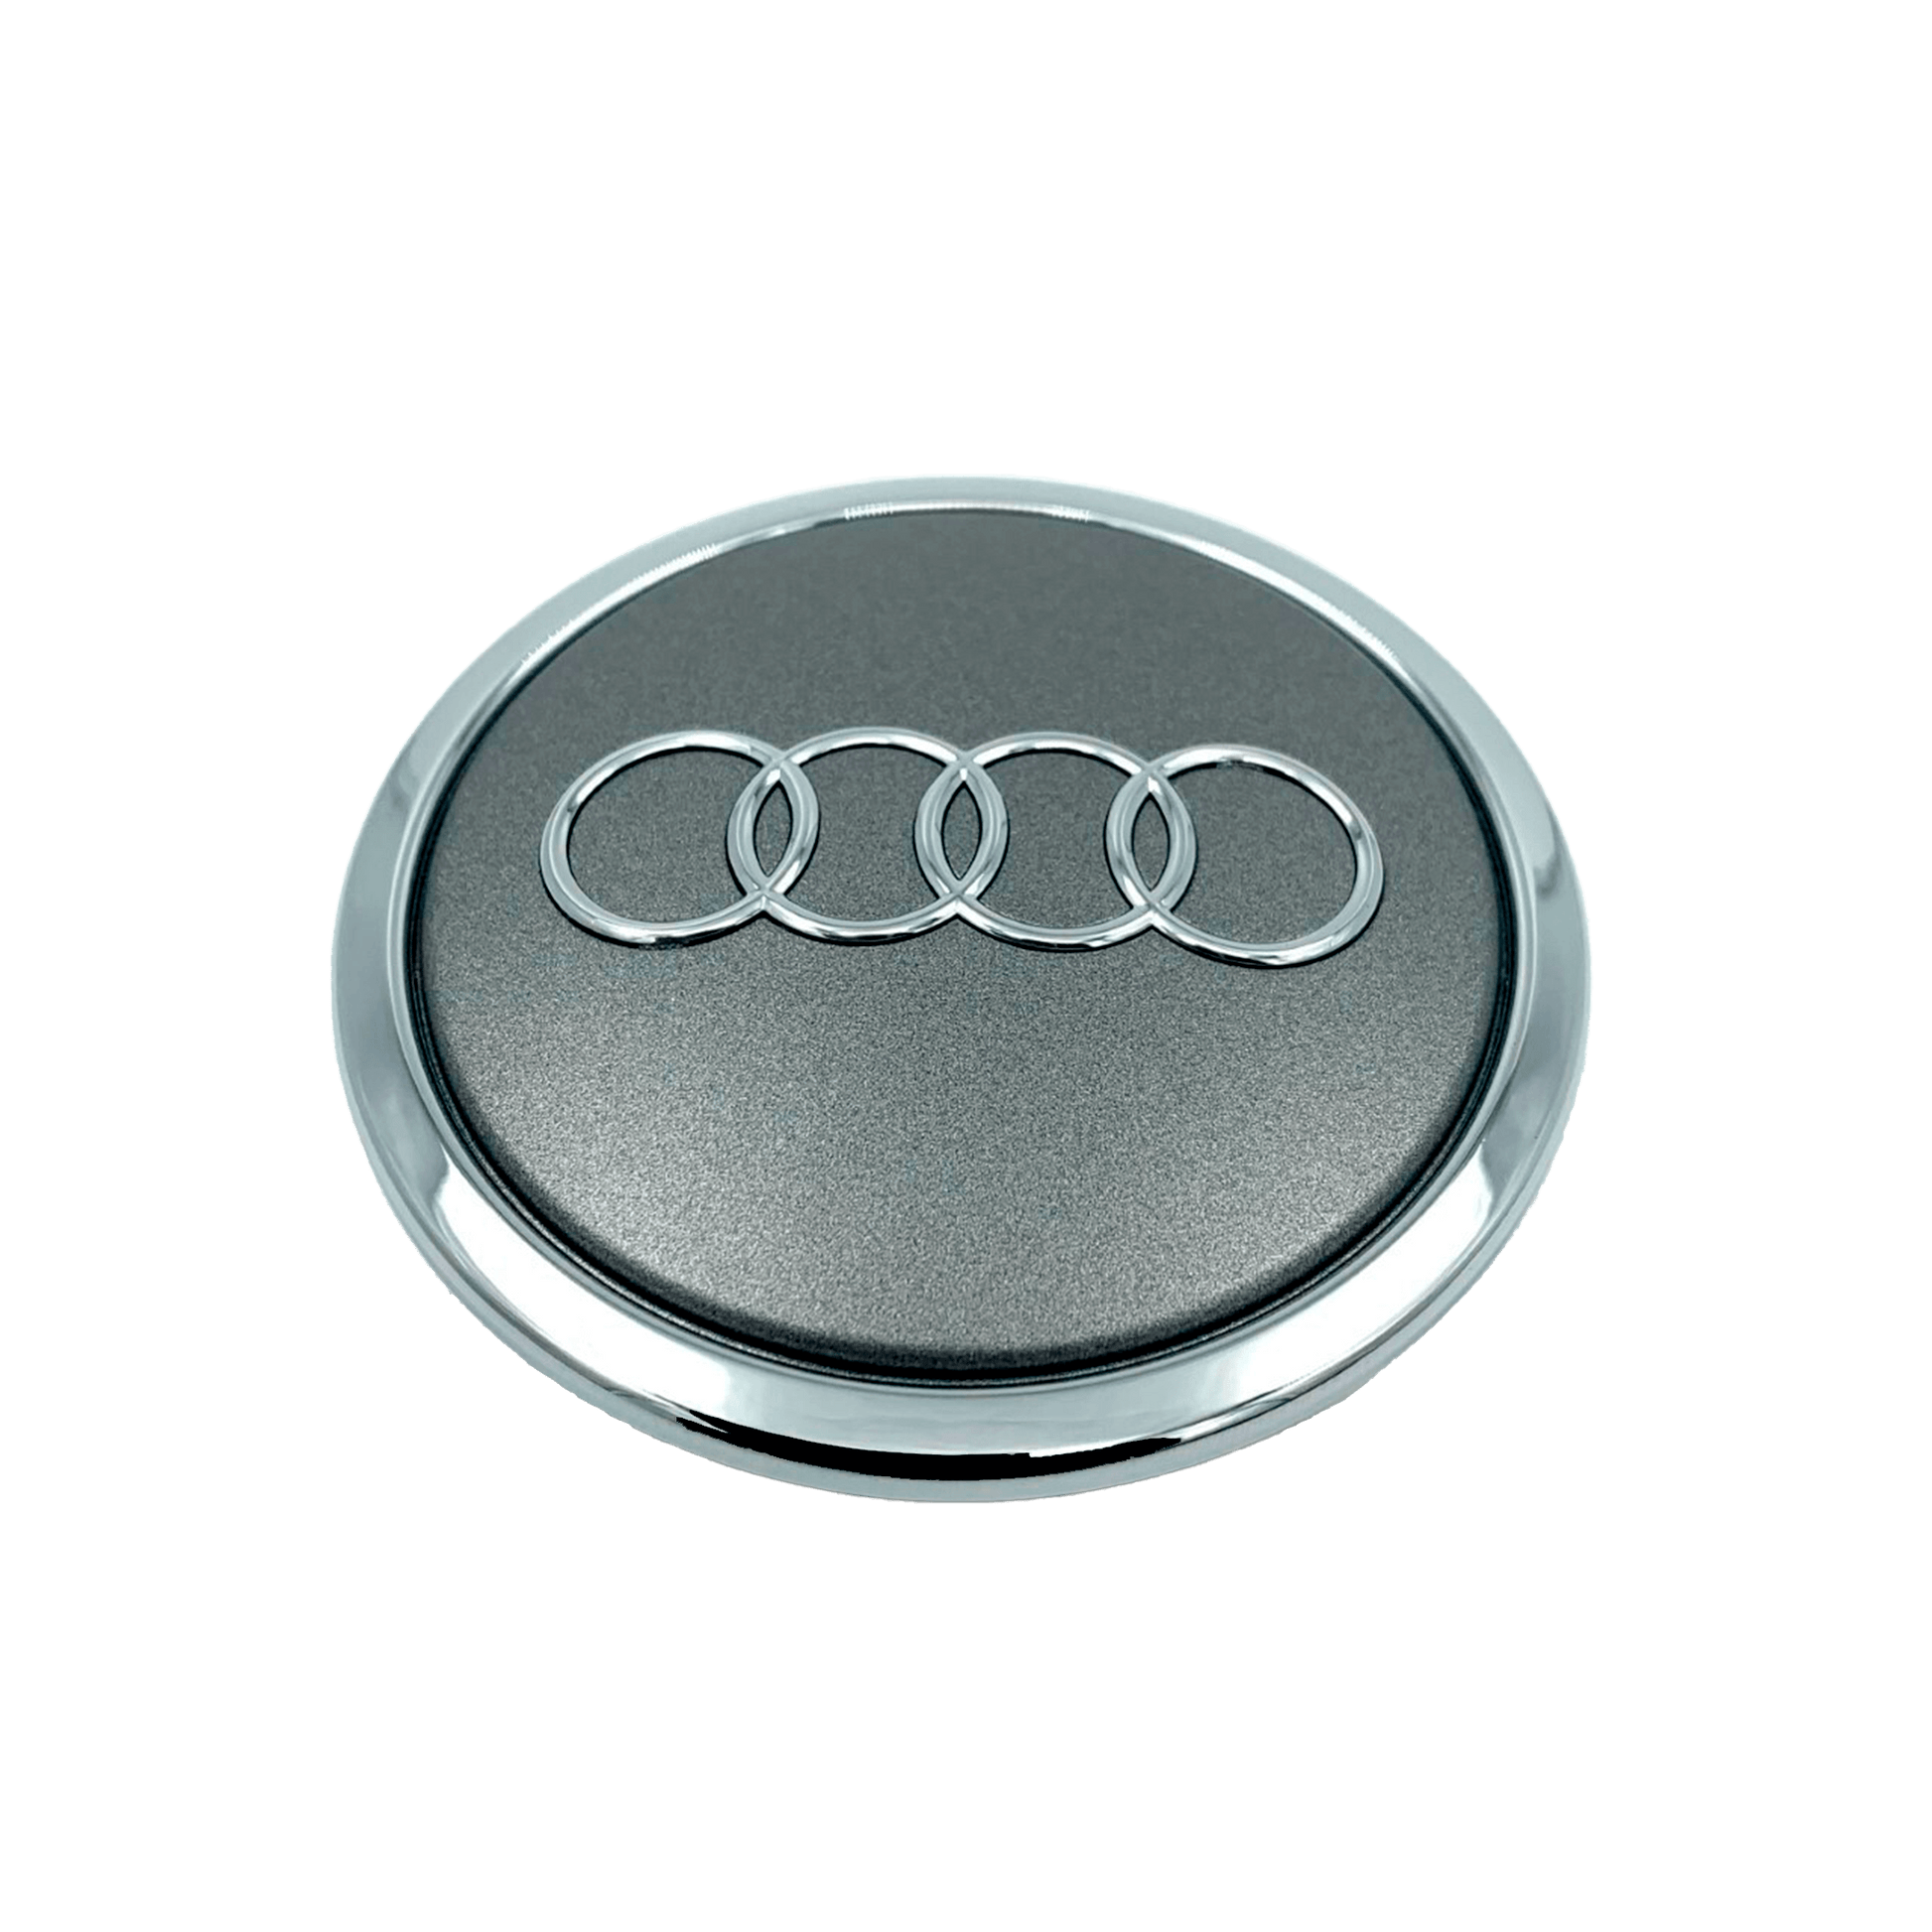 Matt Chrome Spiegelkappen für Audi A3 S3 A4 S4 A5 S5 A6 S6 A8 S8 Q3 RS 